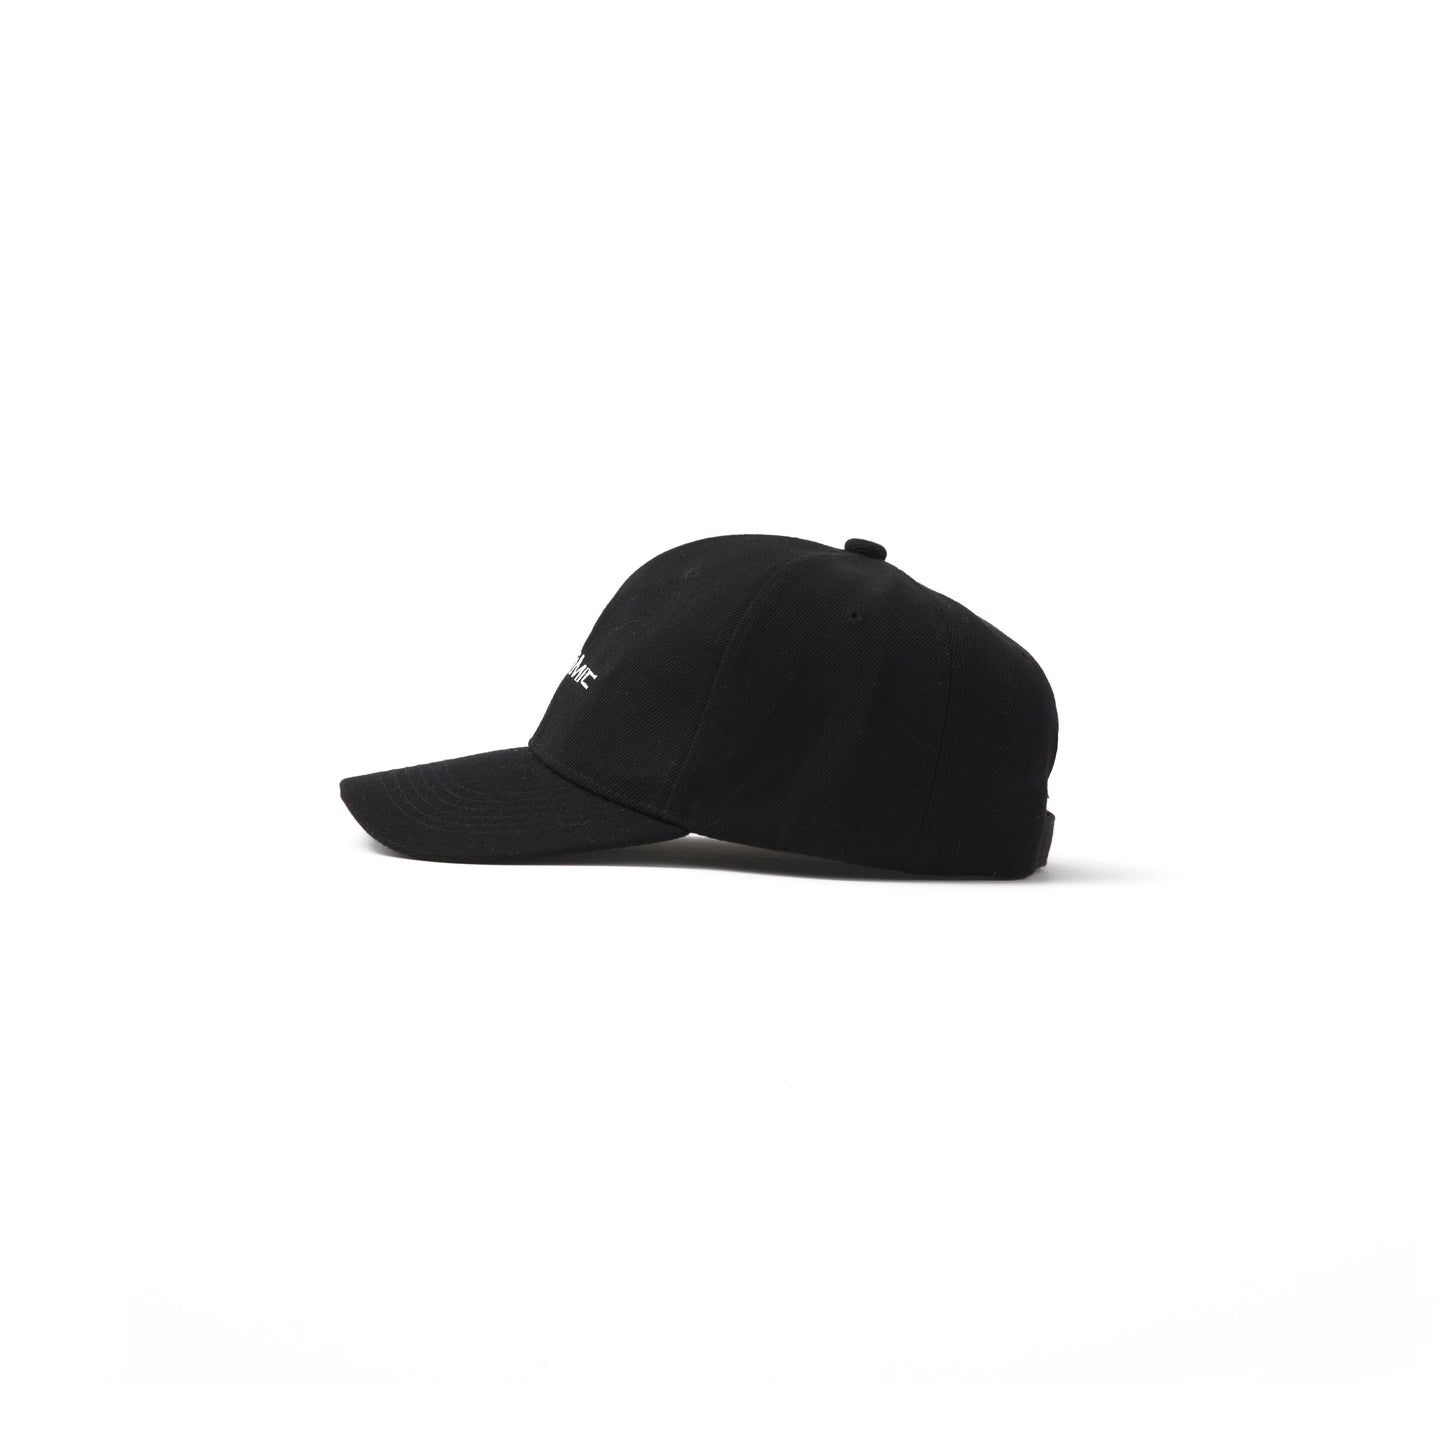 YYATOMIC LOGO BALL CAP (BLACK)